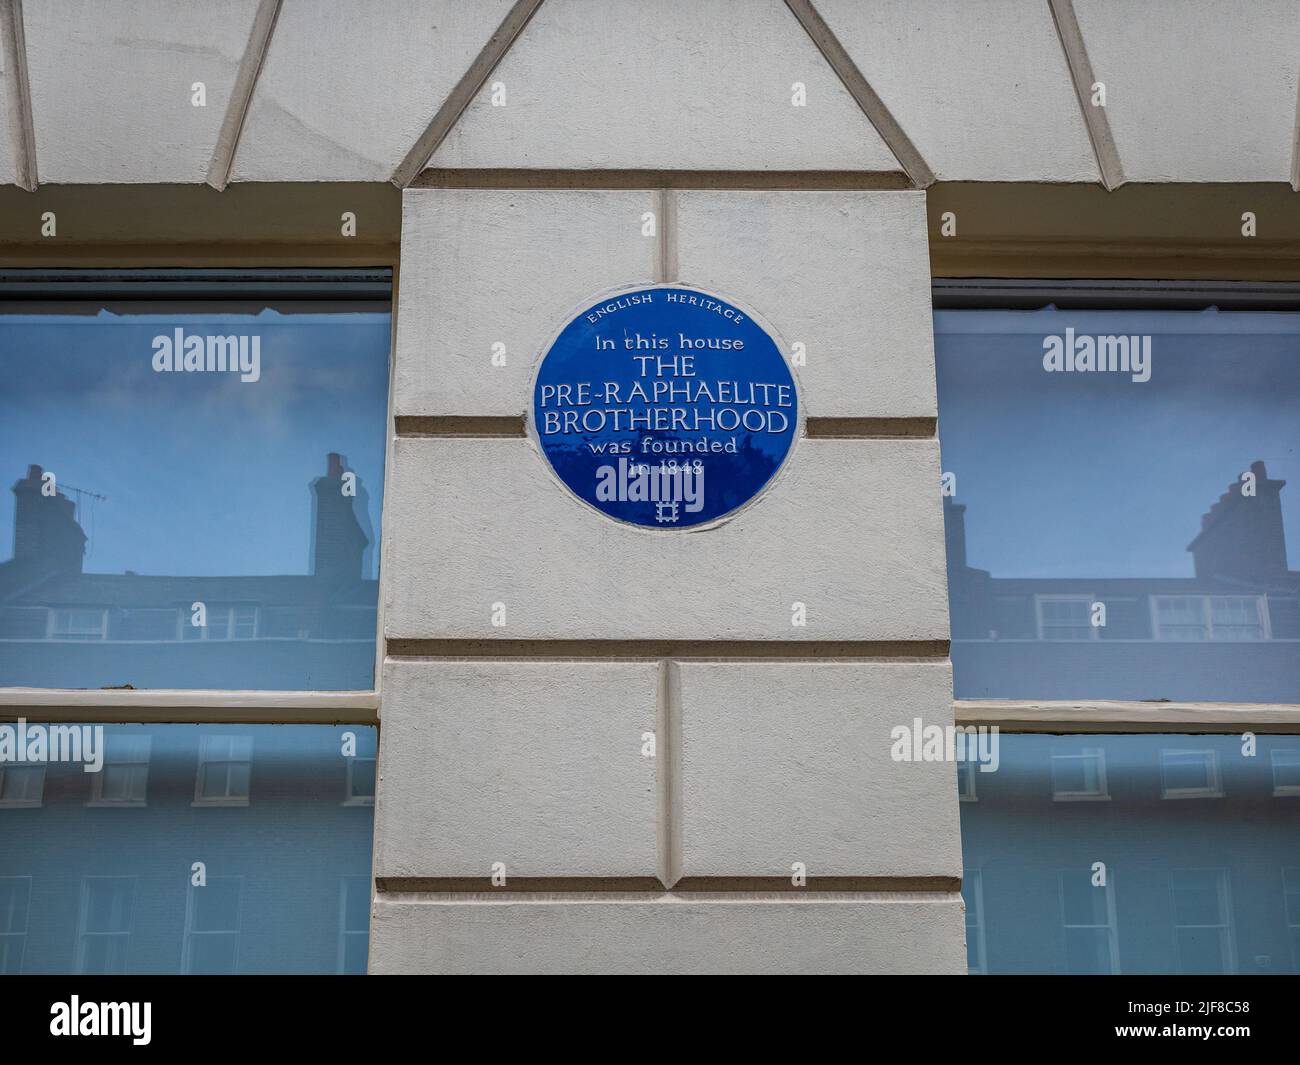 Blaue Plakette Der Präraffaelitischen Bruderschaft 7 Gower St Bloomsbury London. In diesem Haus WURDE 1848 DIE PRÄRAFFAELITISCHE BRUDERSCHAFT gegründet Stockfoto